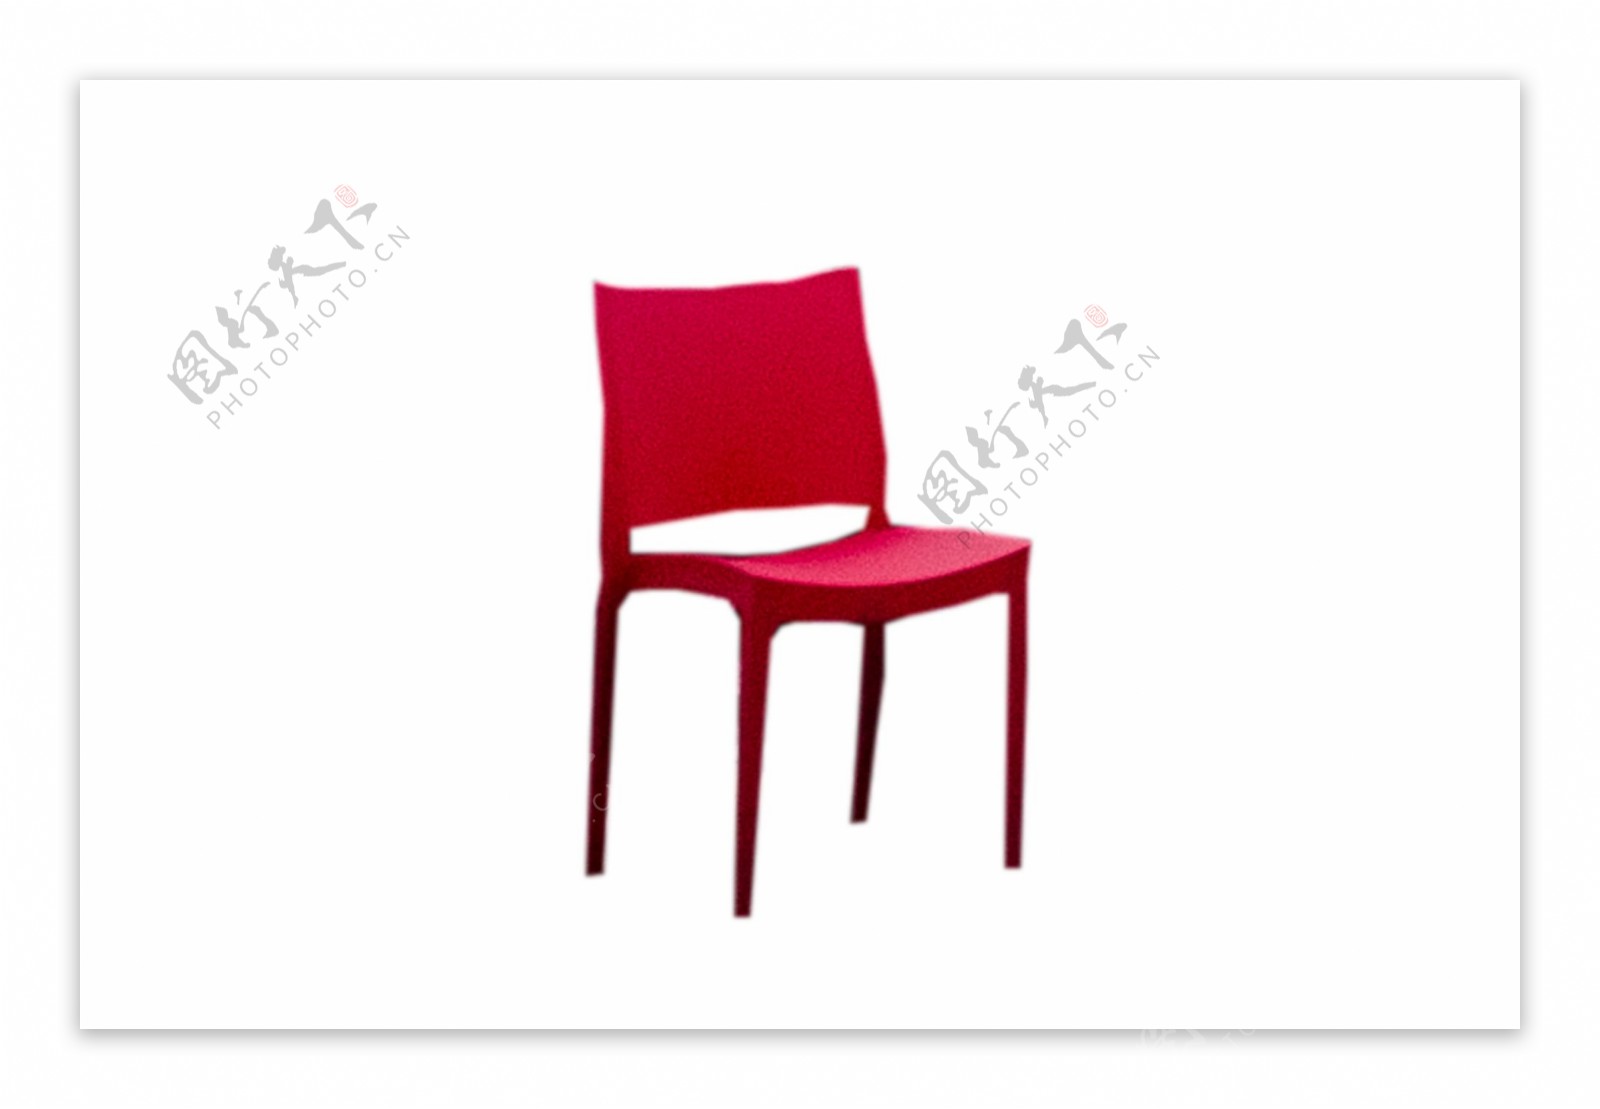 有个红色四条腿的椅子